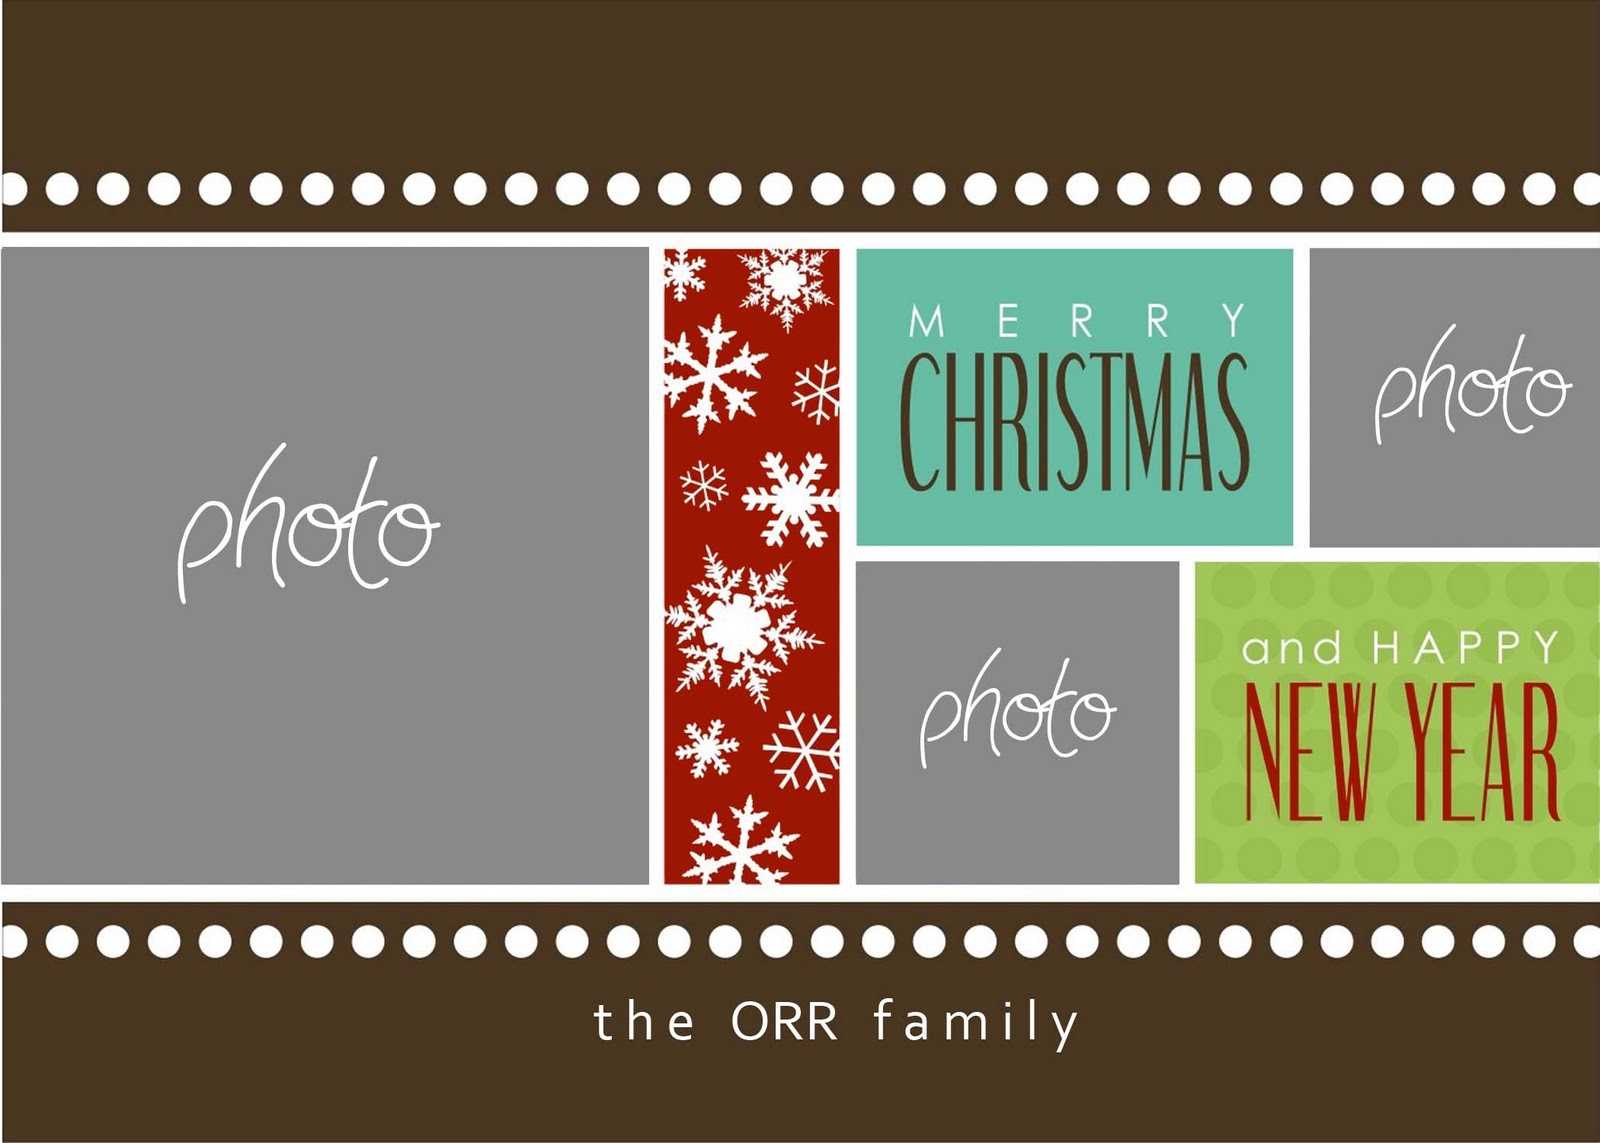 Christmas Cards Templates Photoshop ] – Christmas Card For Christmas Photo Card Templates Photoshop